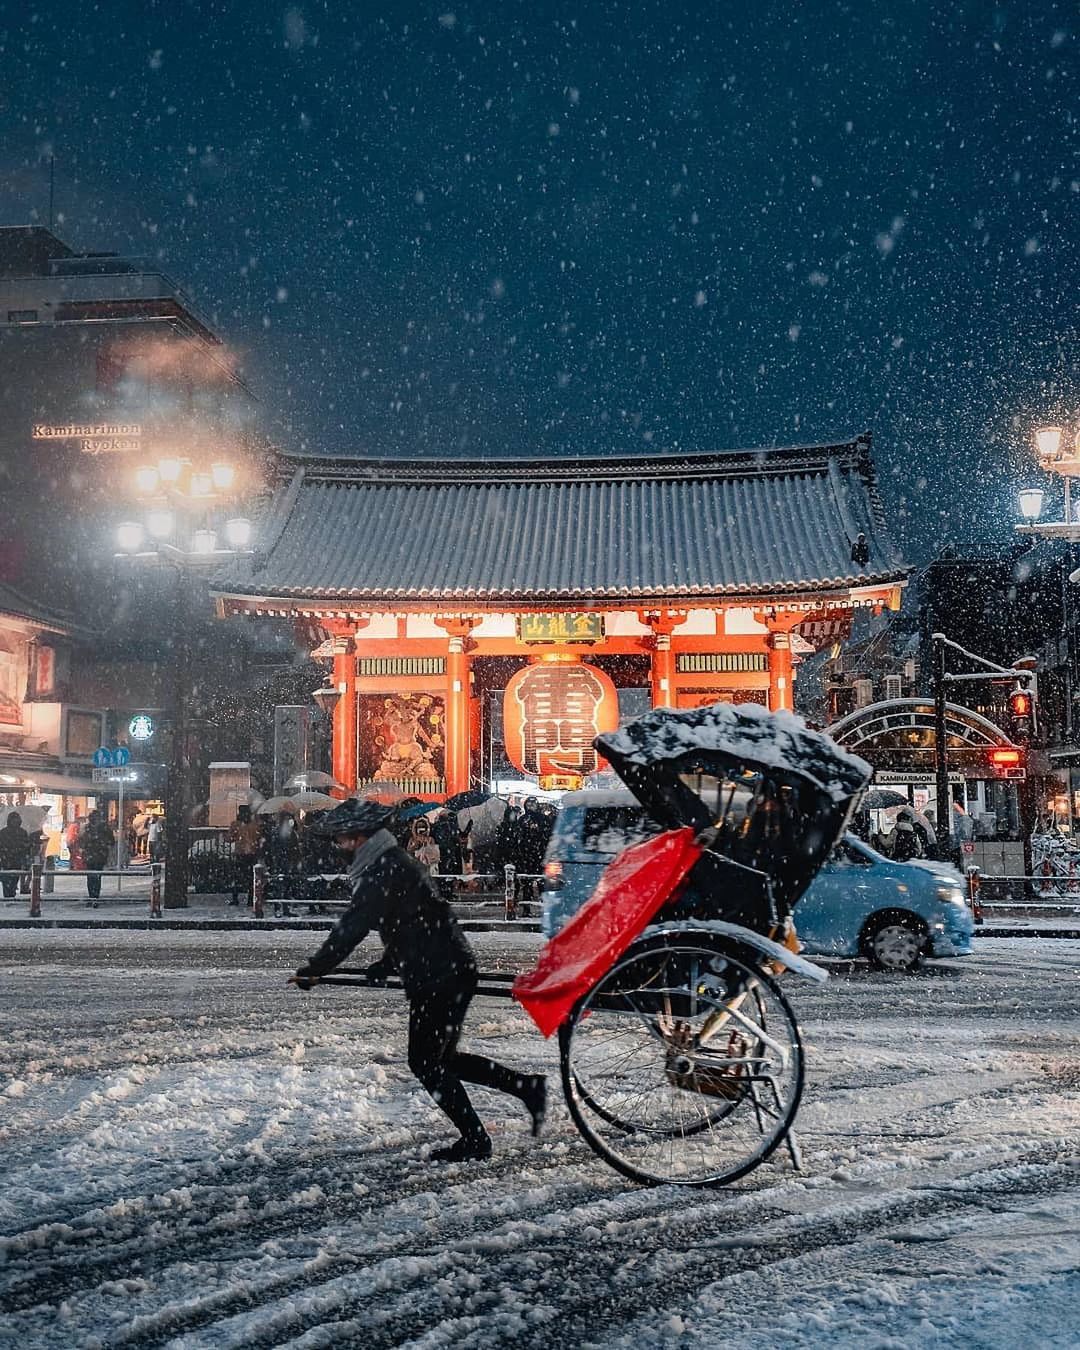 Chùm ảnh: Khung cảnh Tokyo dưới tuyết trắng đẹp đến nao lòng, phảng phất nét buồn tựa cổ tích mùa đông - Ảnh 10.